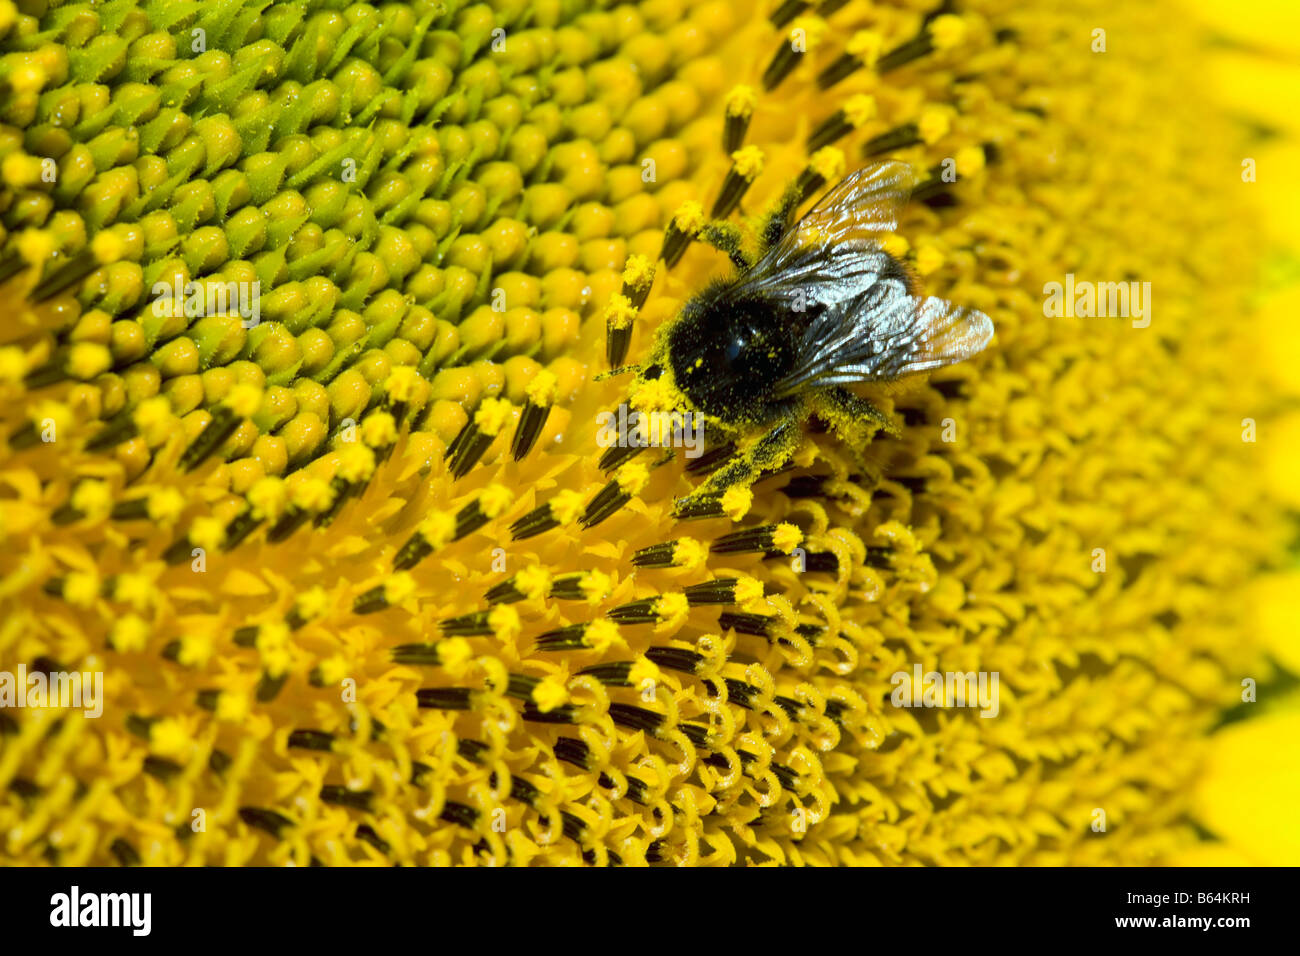 Francia, vicino a Beaune, Borgogna, dettaglio dei semi di girasole. Humblebee. Foto Stock